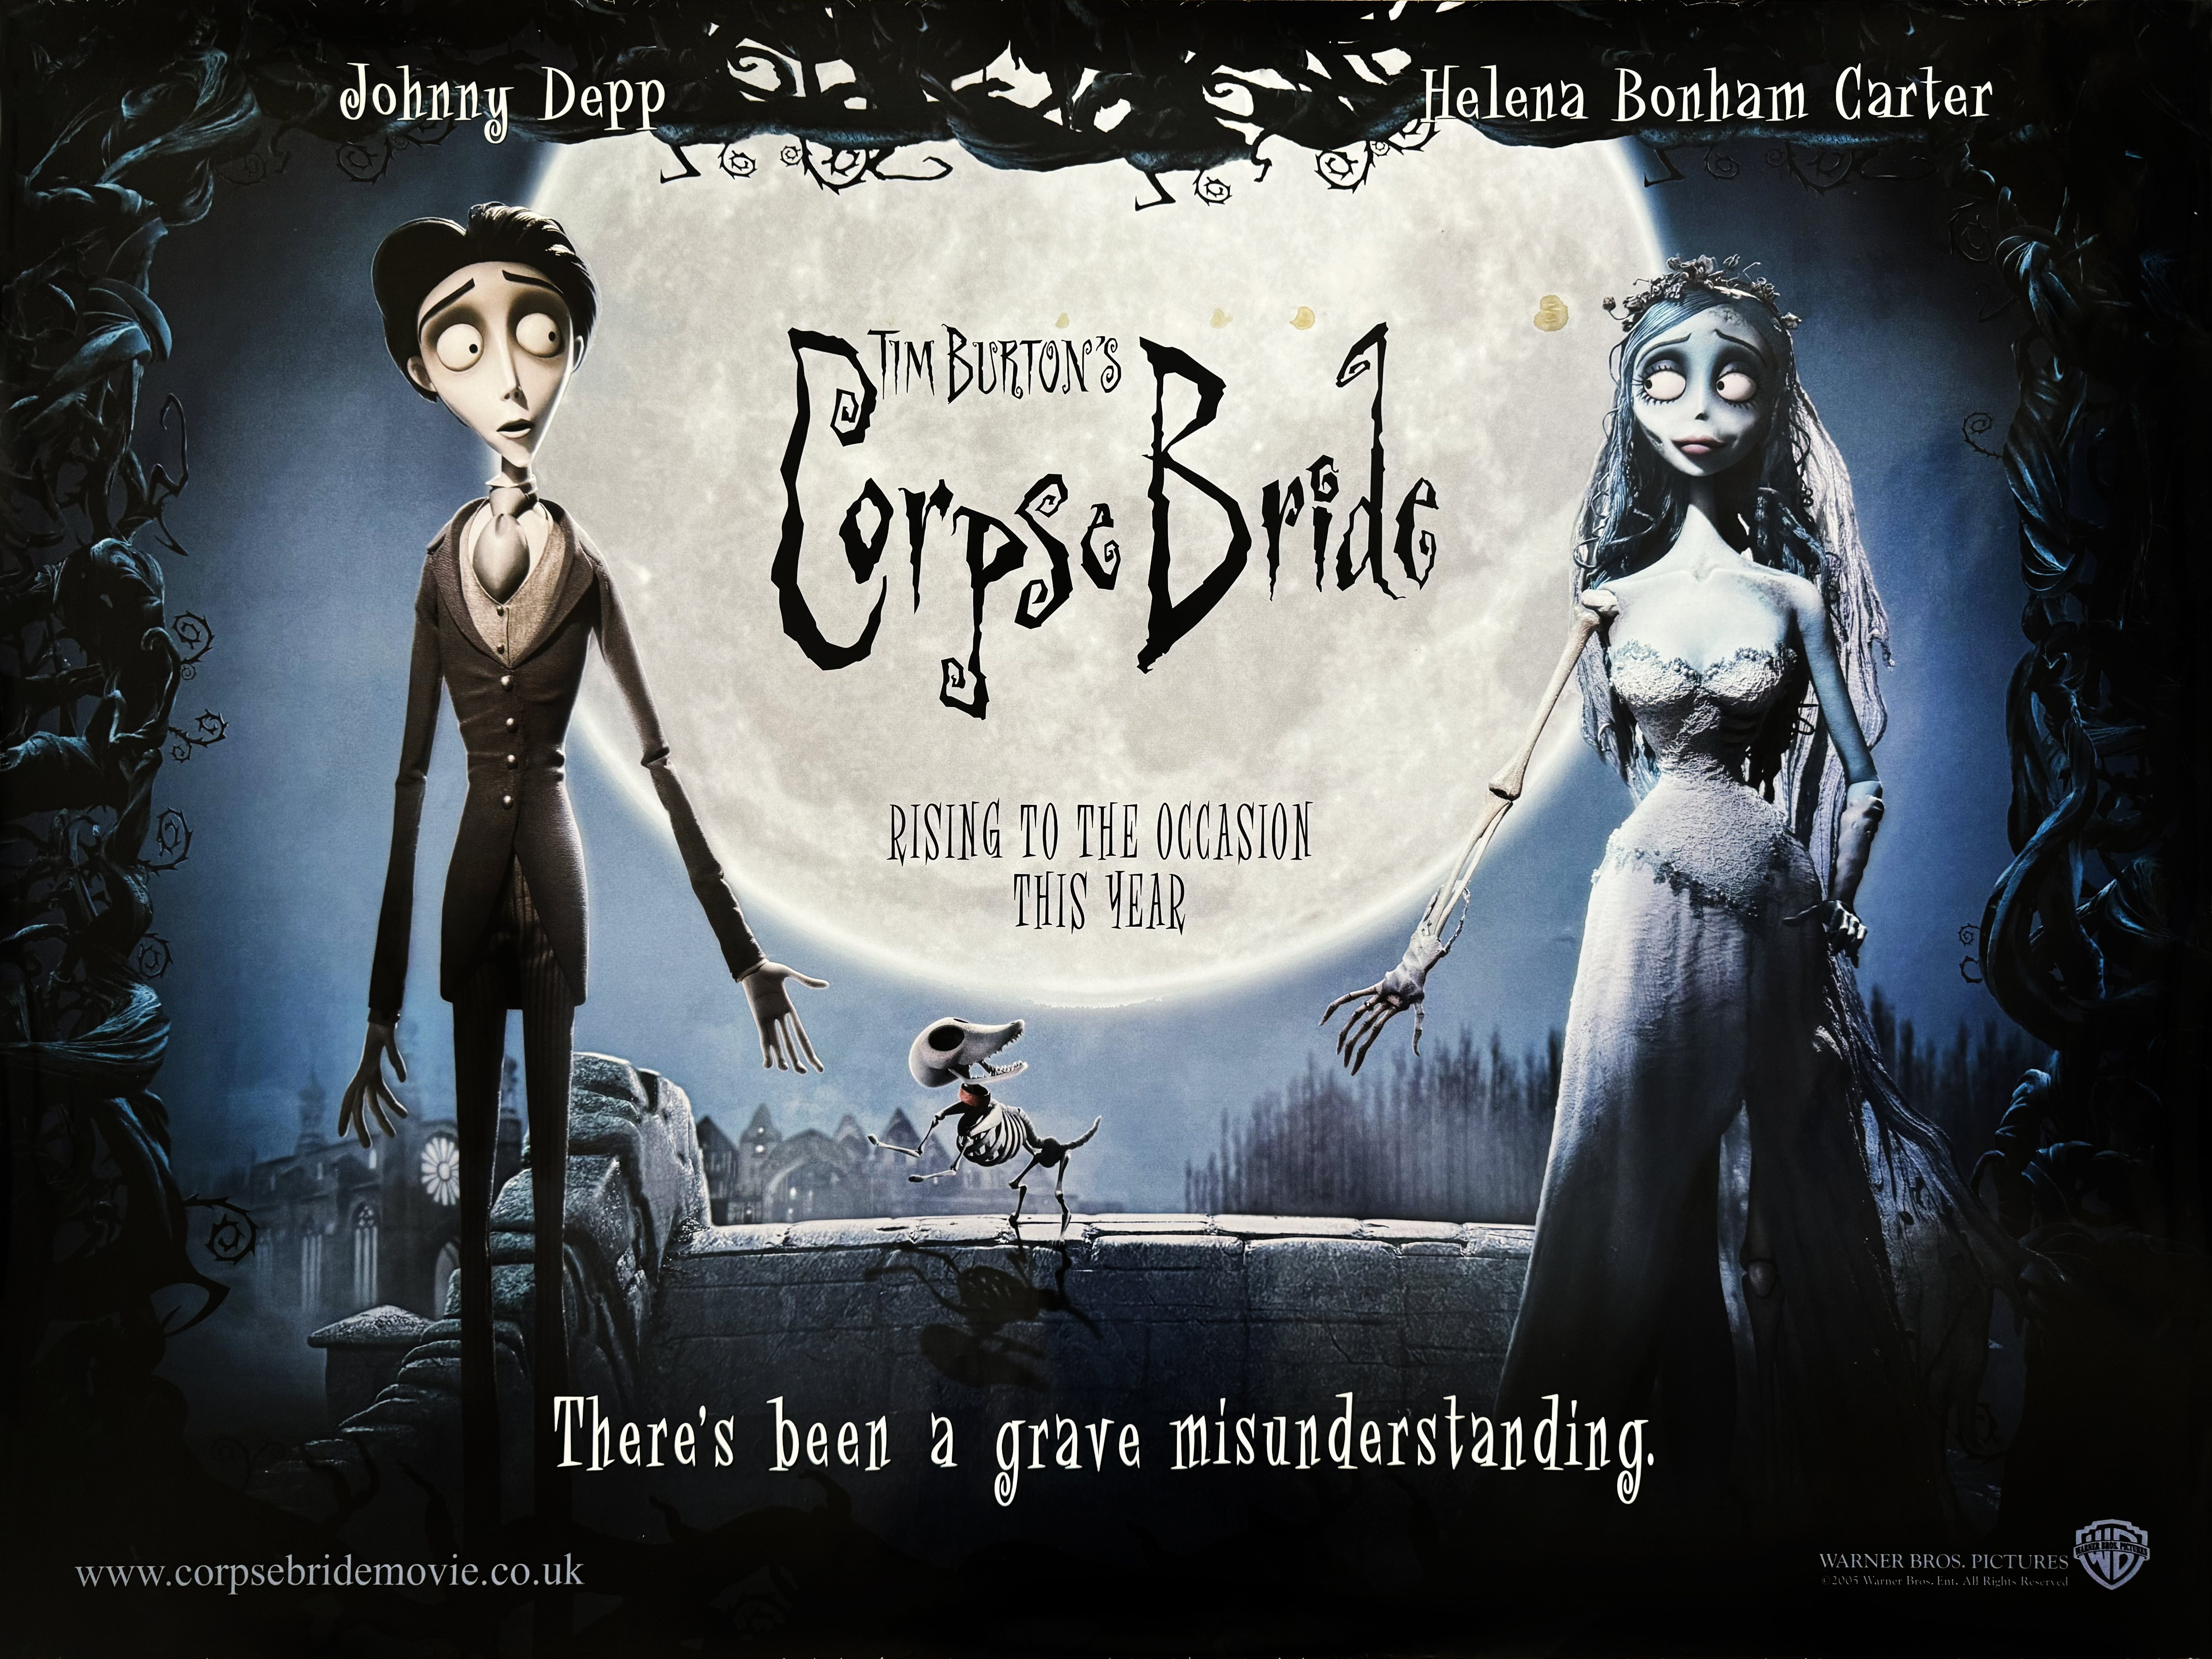 Corpse Bride movie quad poster